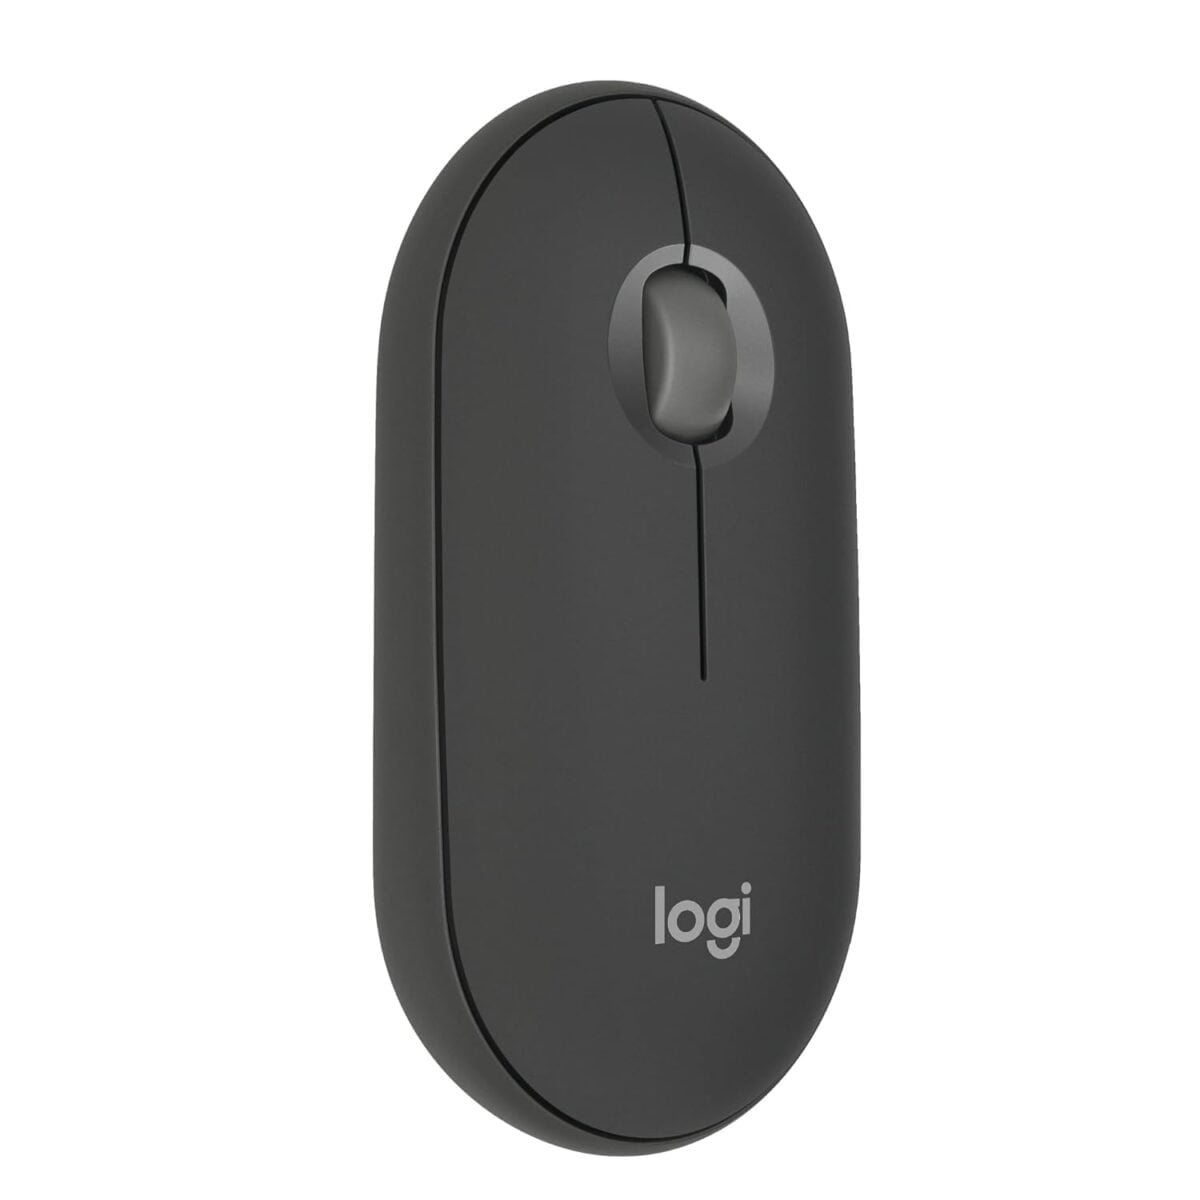 Logitech pebble mouse 2 m350s